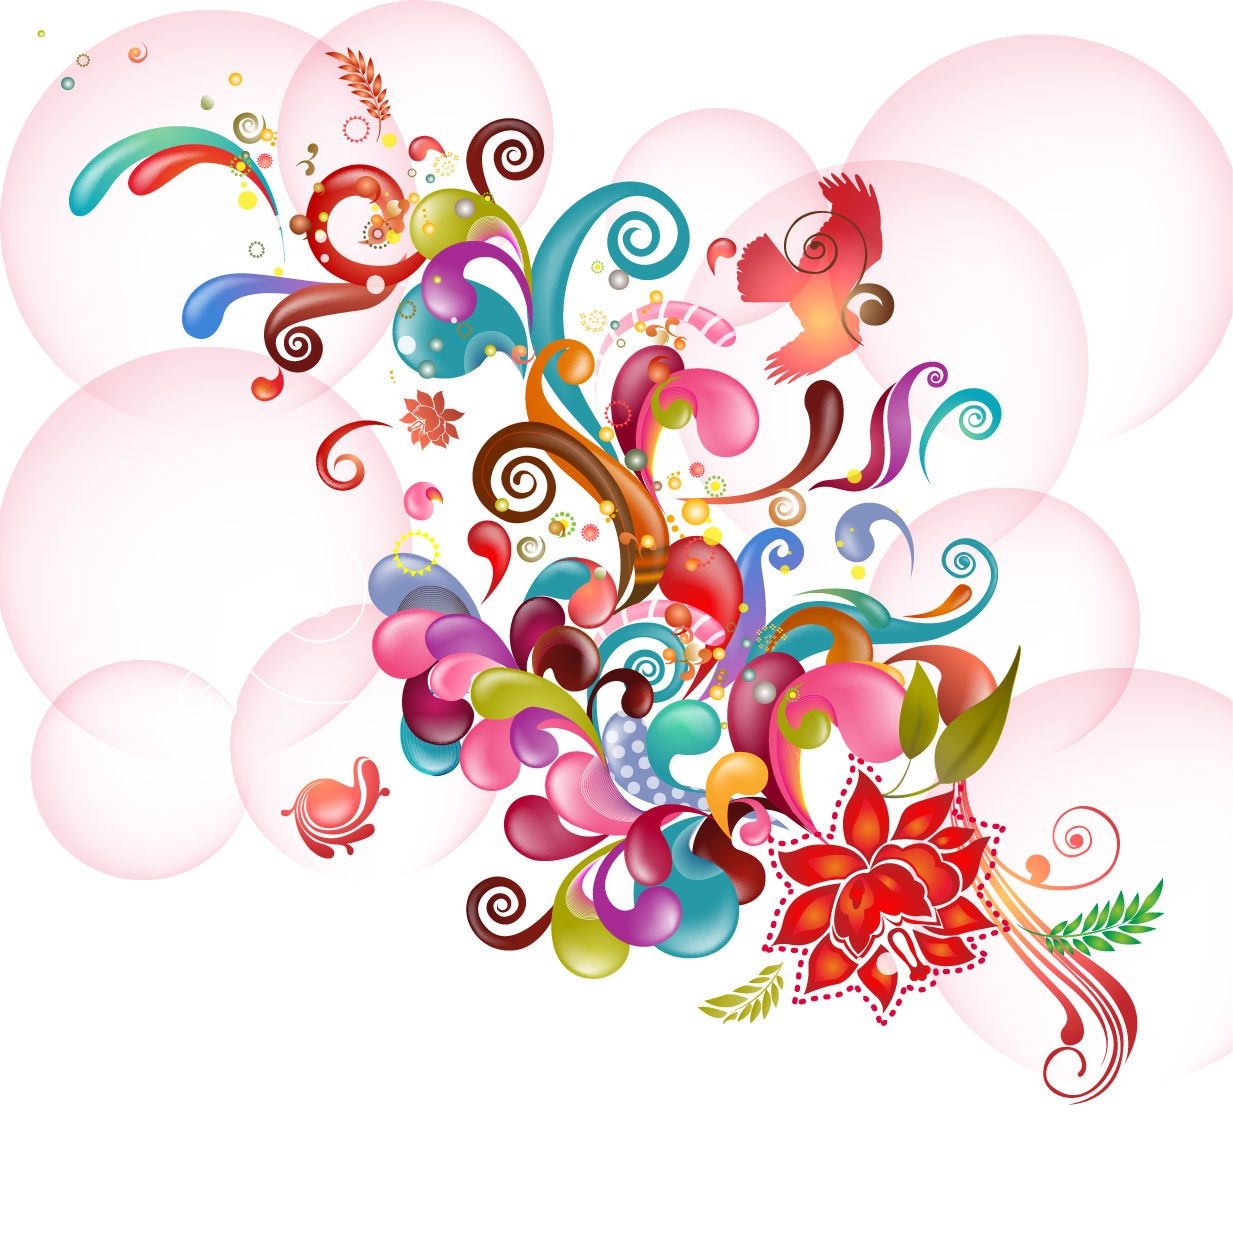 Colorido abstracto floral y remolinos en burbujas